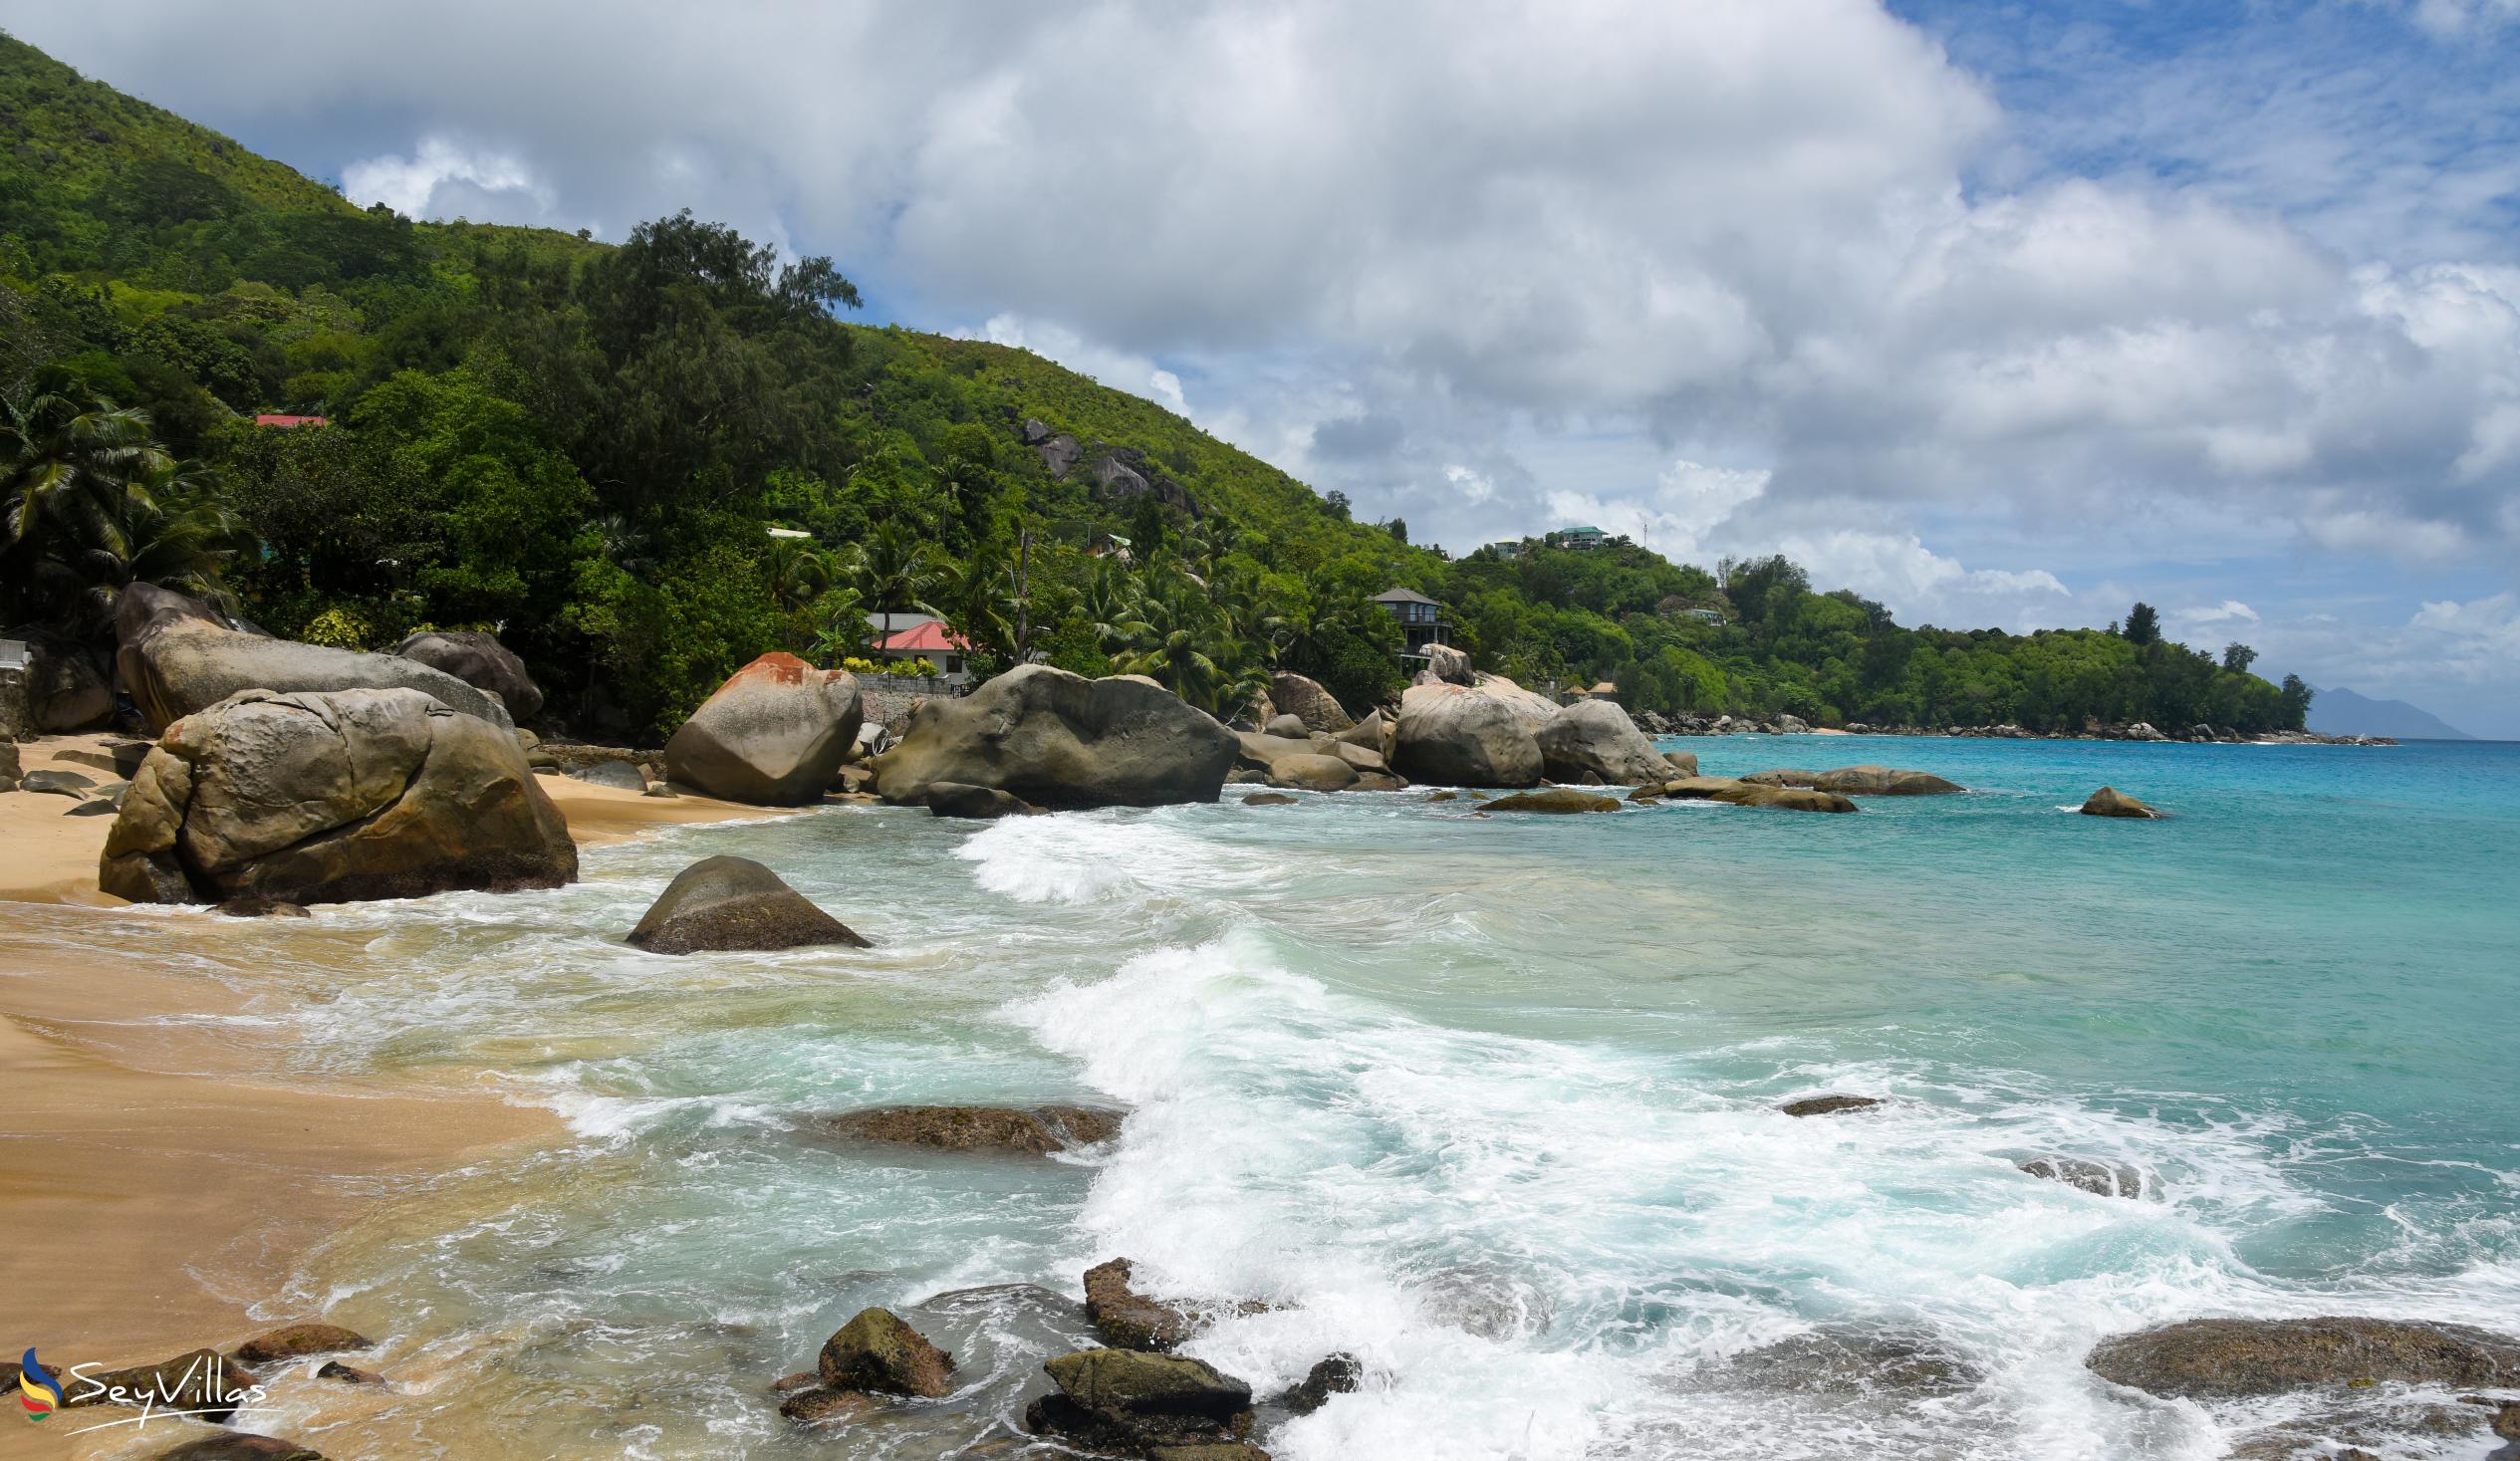 Photo 8: Anse Machabée - Mahé (Seychelles)